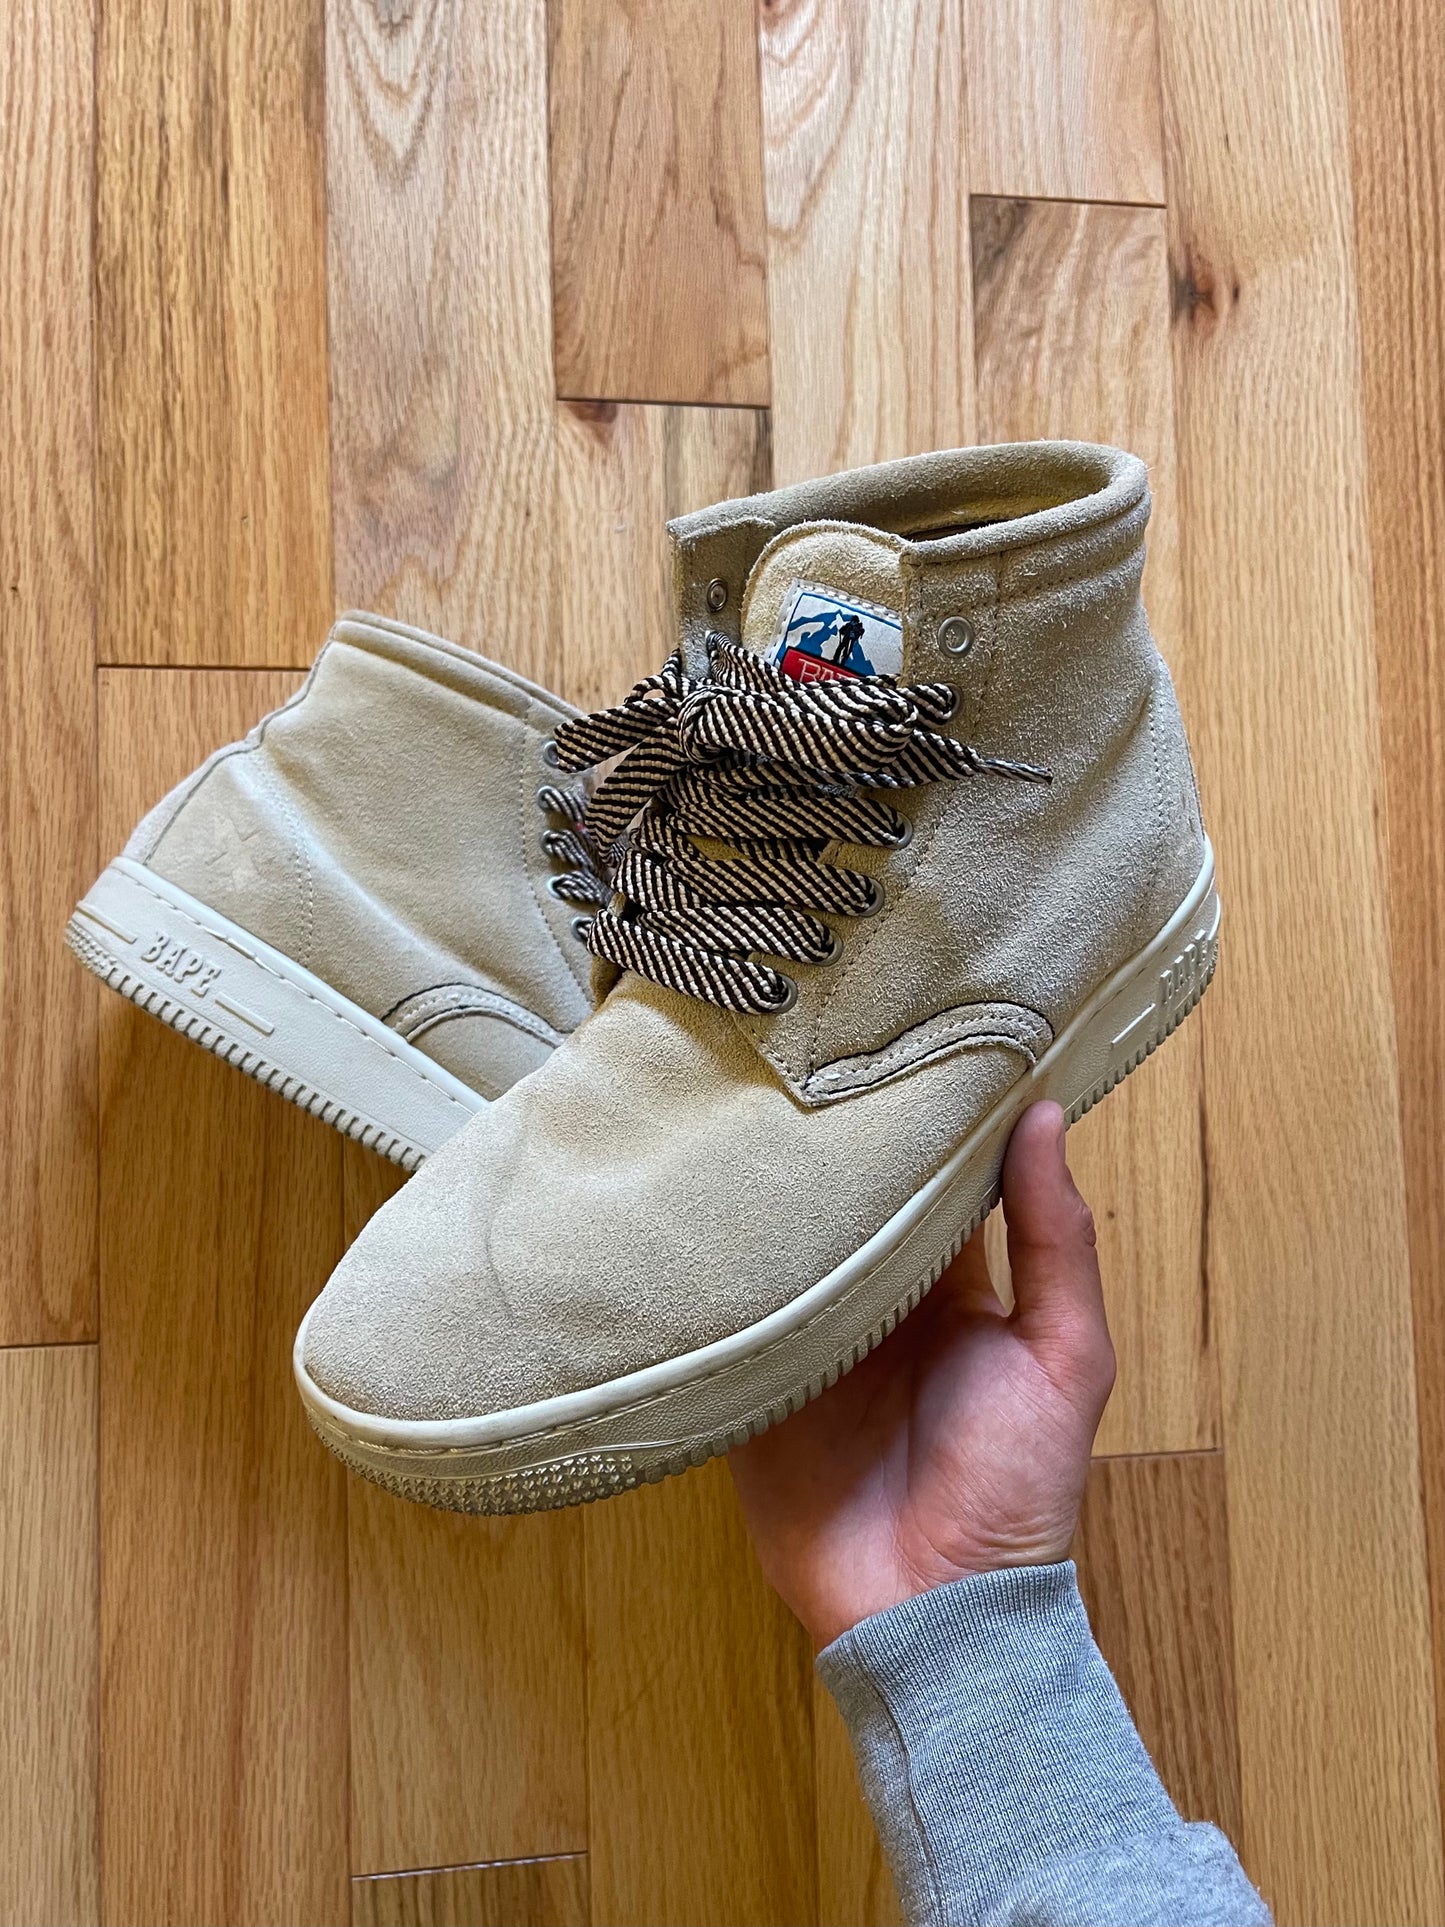 Early 2000s Bape Mountain Gear Suede Sneaker/Boot Hybrid